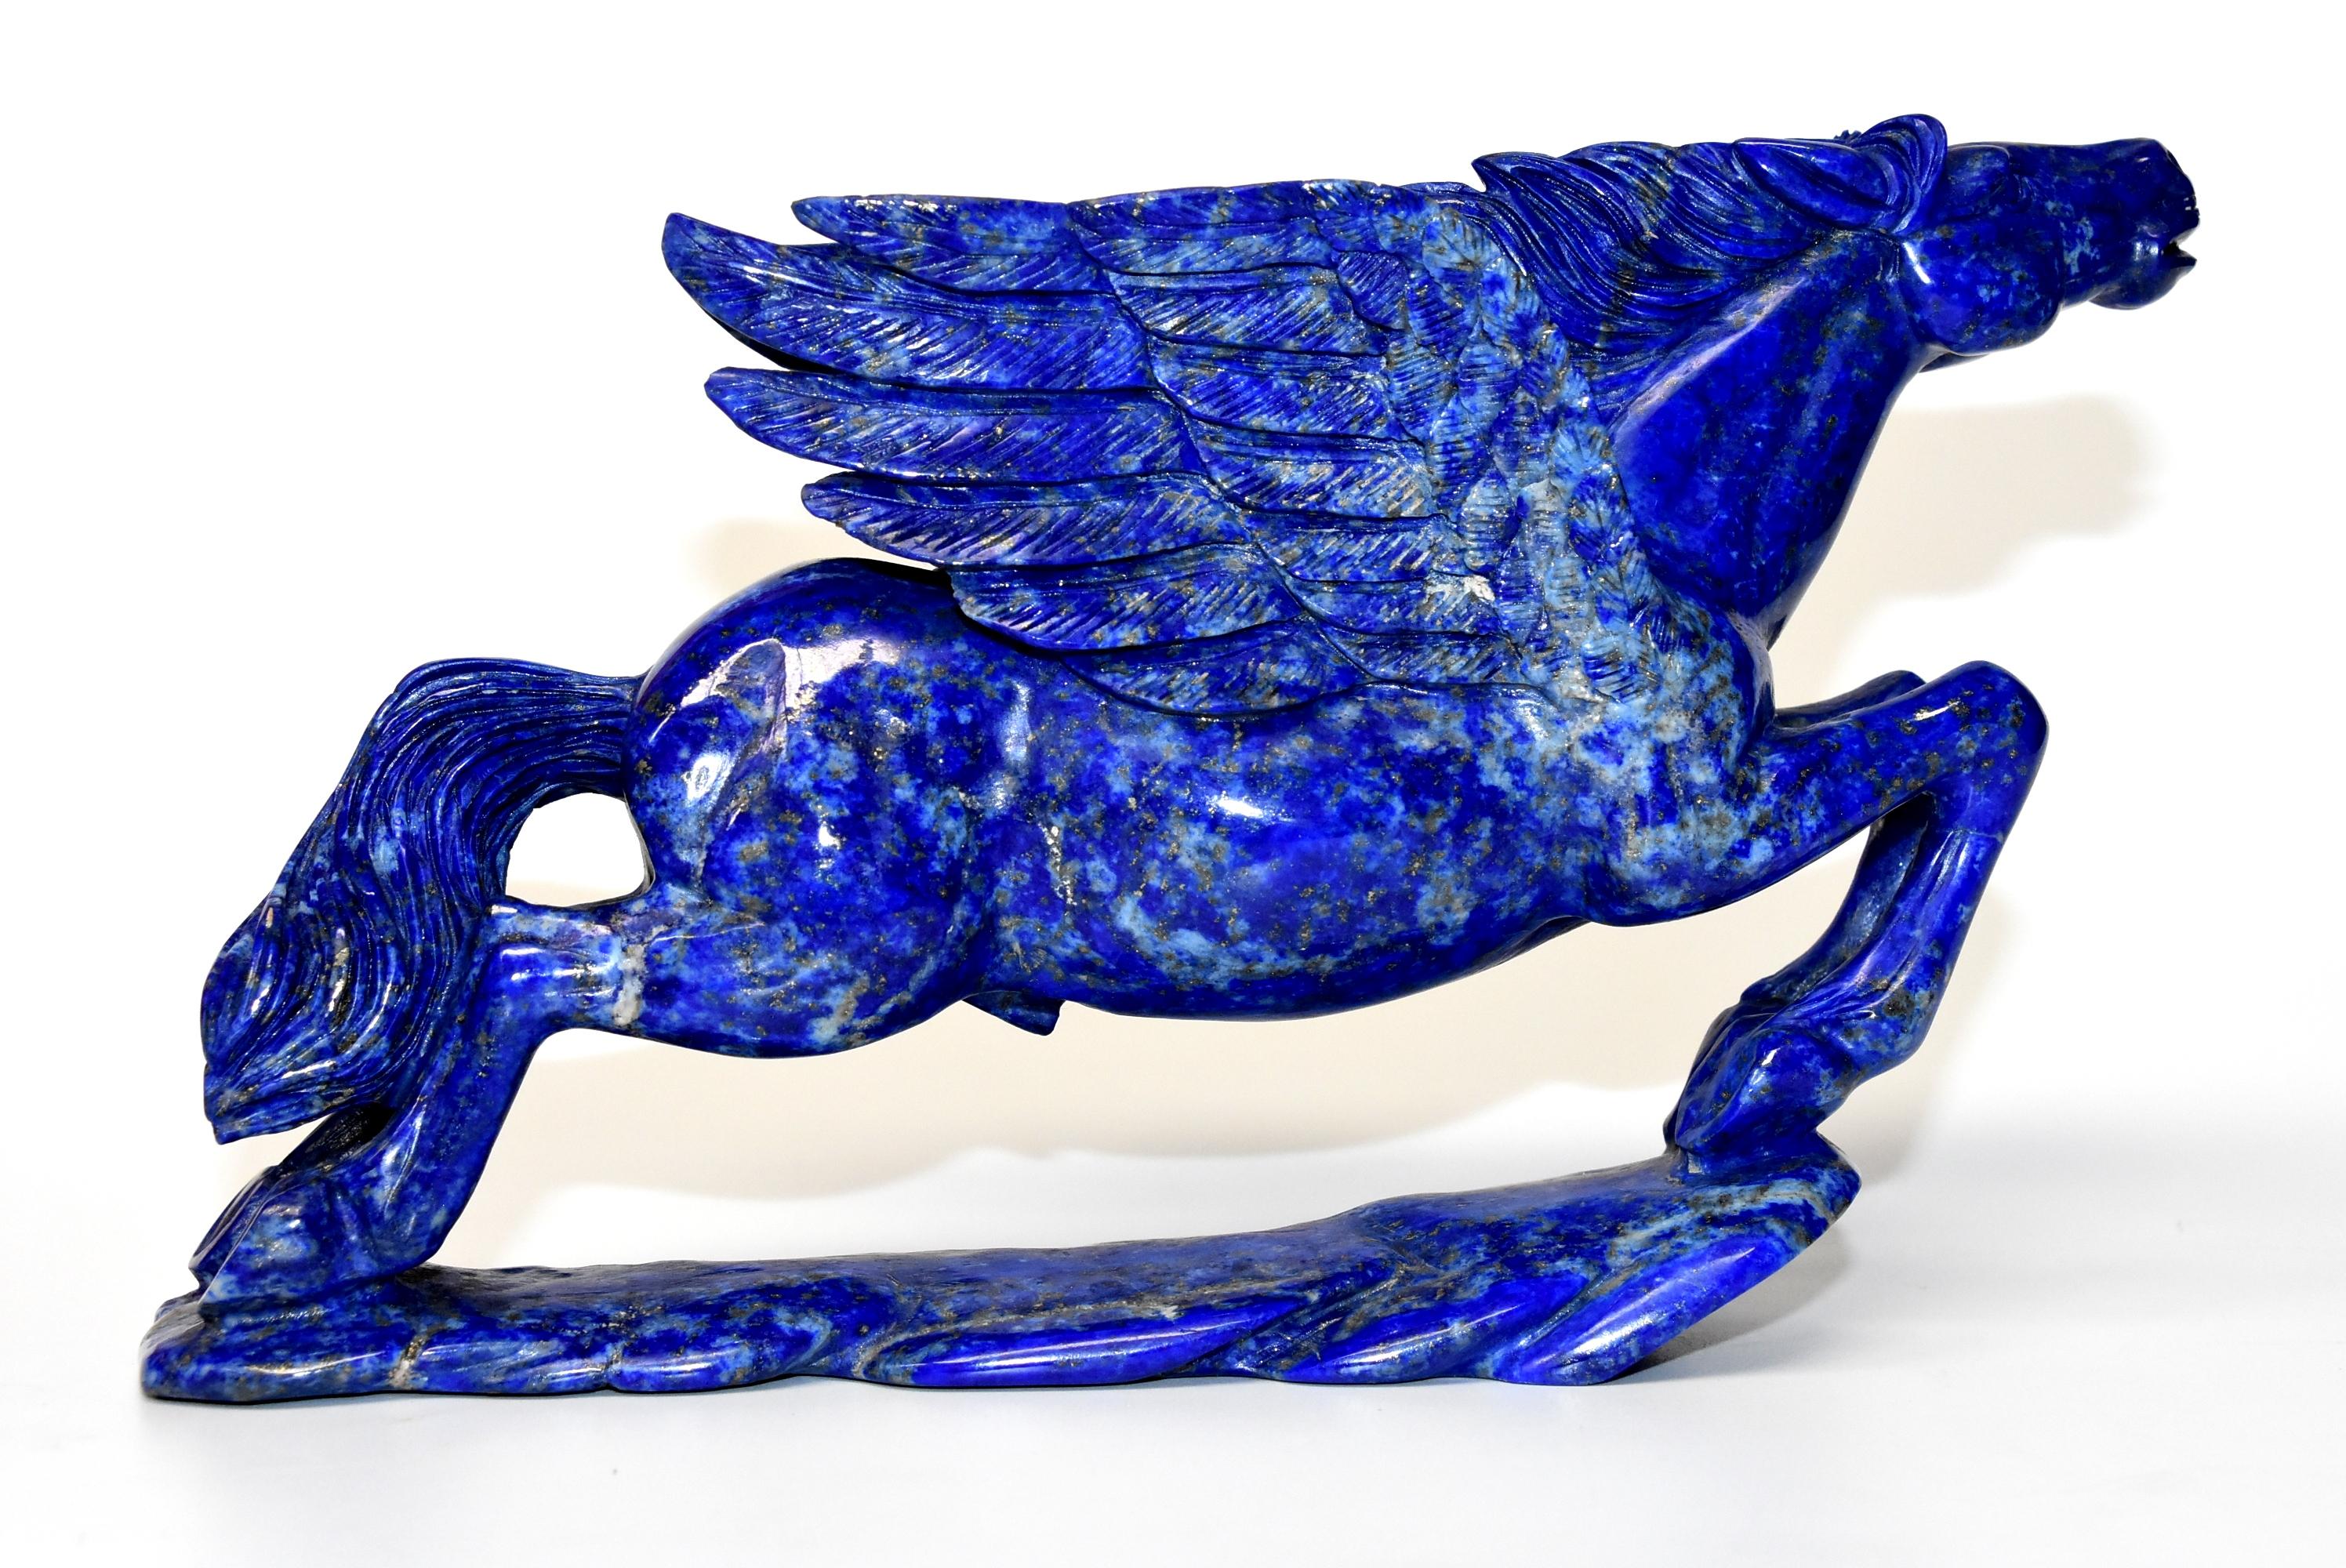 Lapis Lazuli Statue, 4.5 Lb Pegasus Sculpture by Known Artist 9